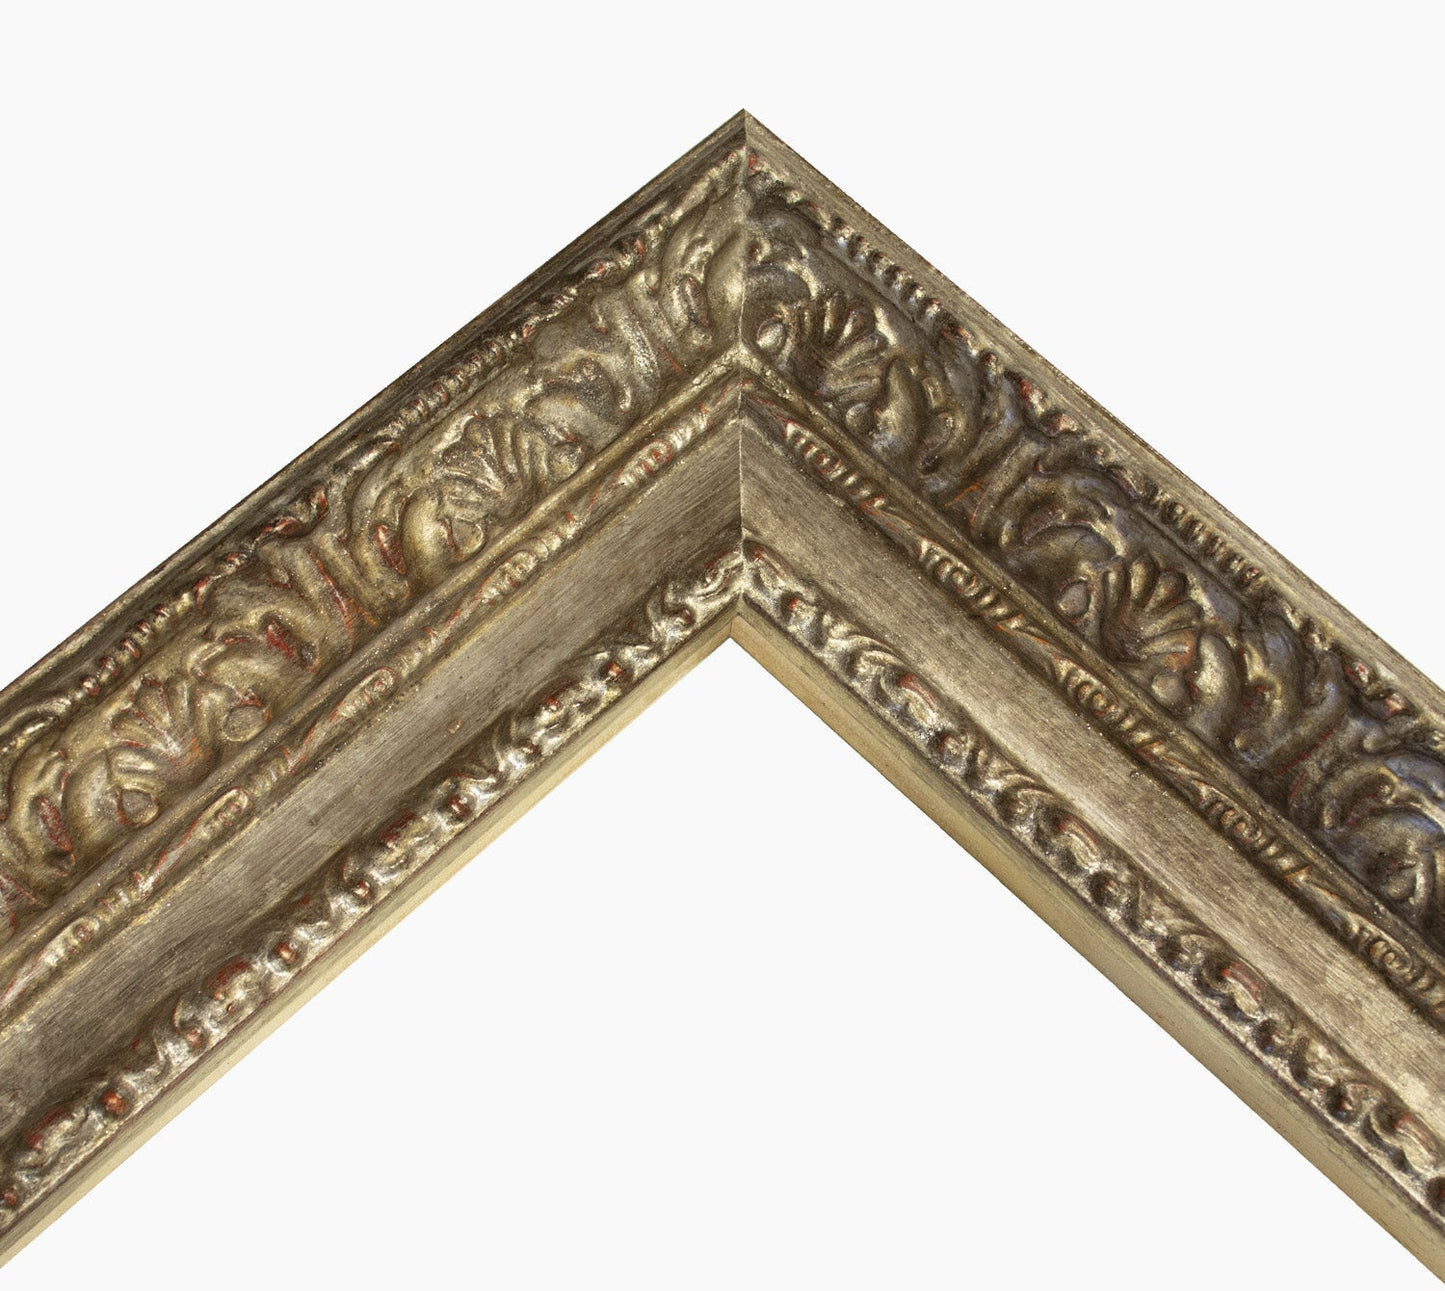 643.231 cadre en bois à la feuille d'argent antique mesure de profil 65x55 mm Lombarda cornici S.n.c.